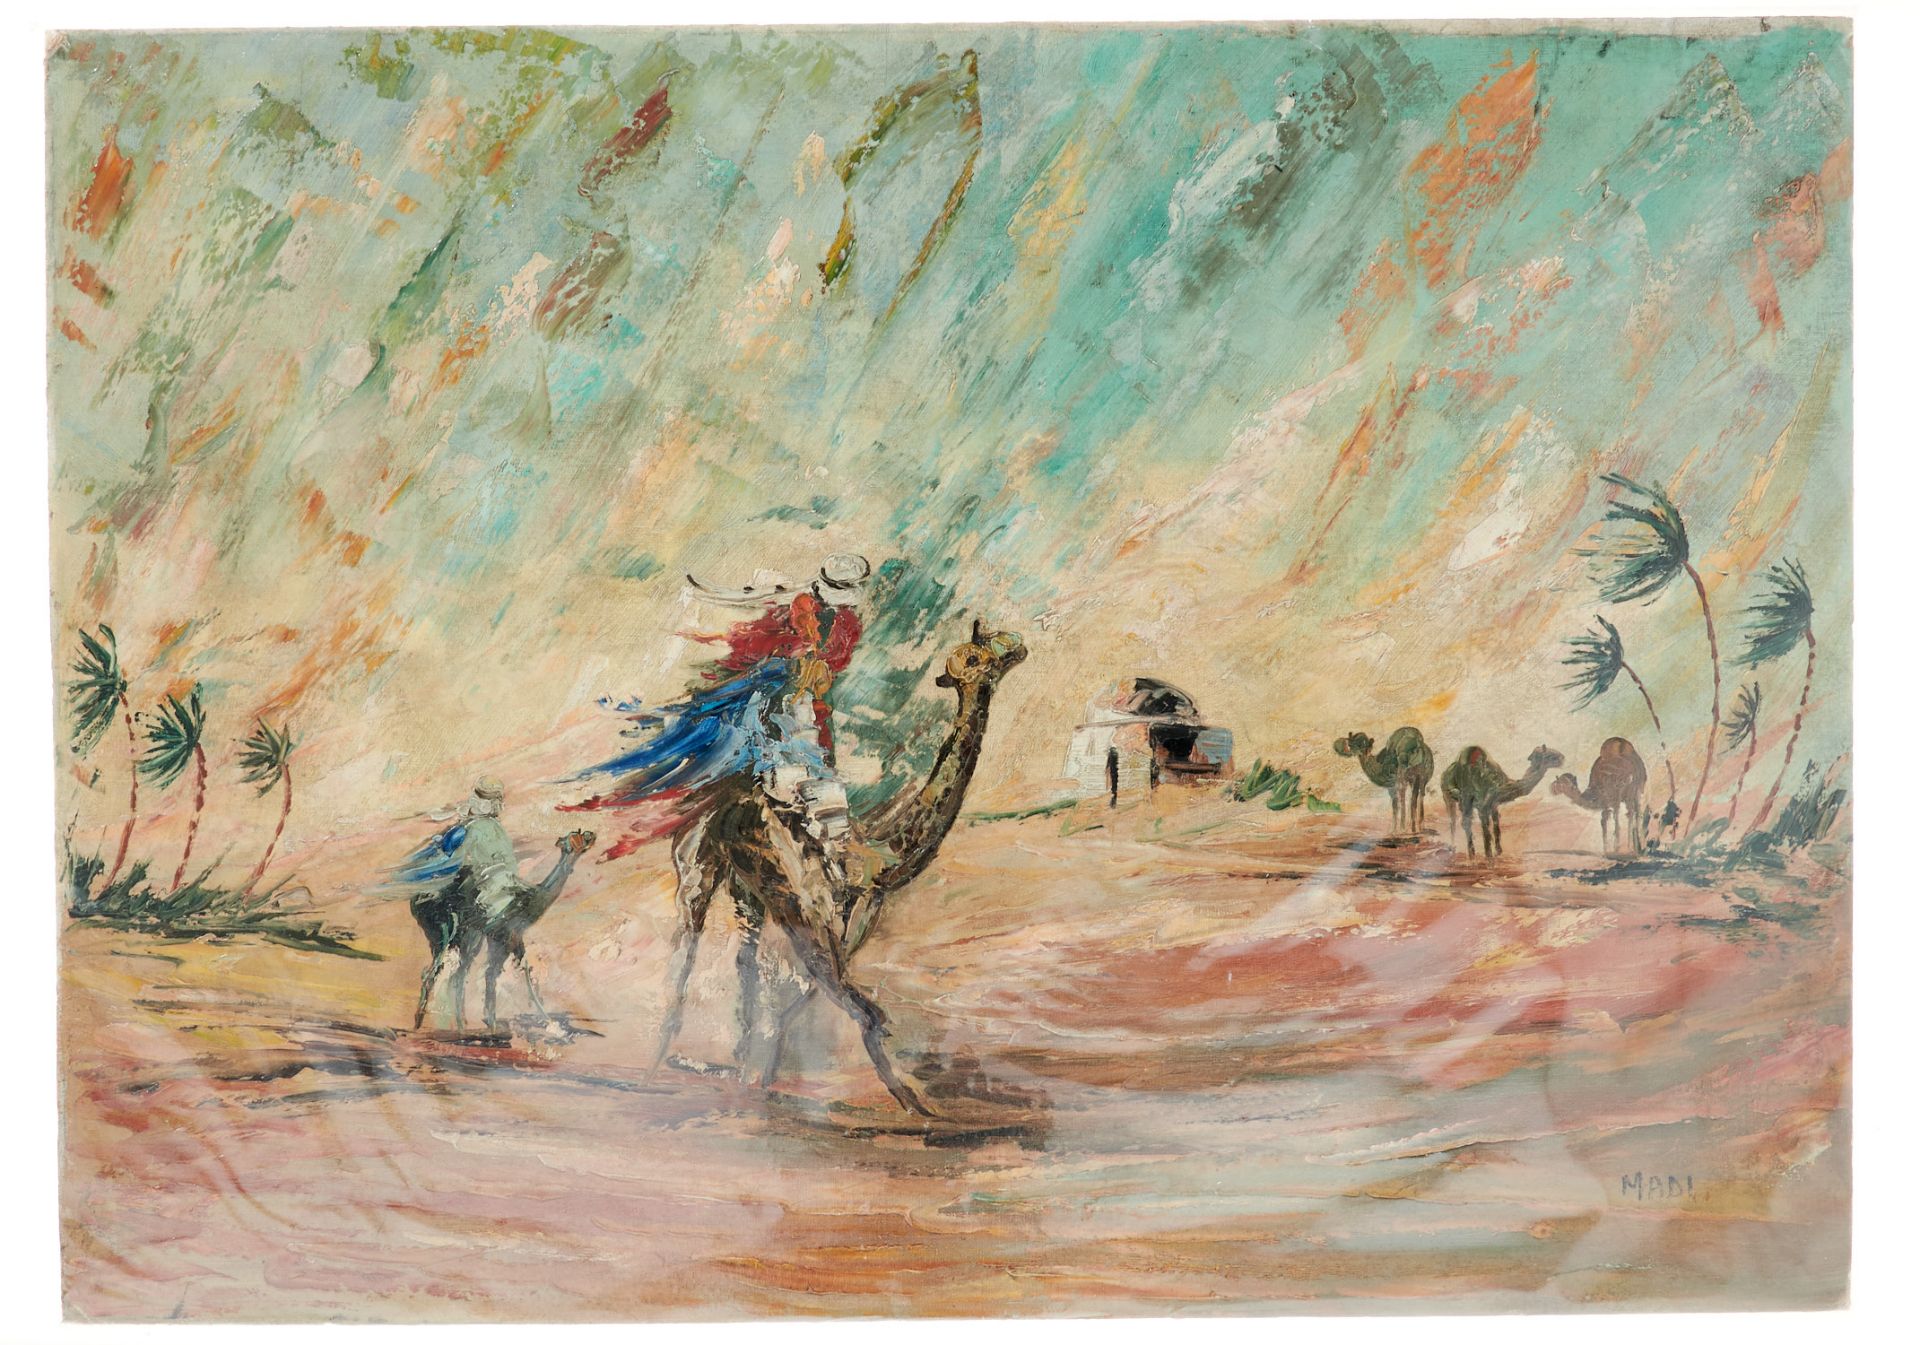 Afrika Madi (Künstler des 20. Jahrhunderts), Sandsturm in der Wüste. Öl auf Leinwand auf Karton.